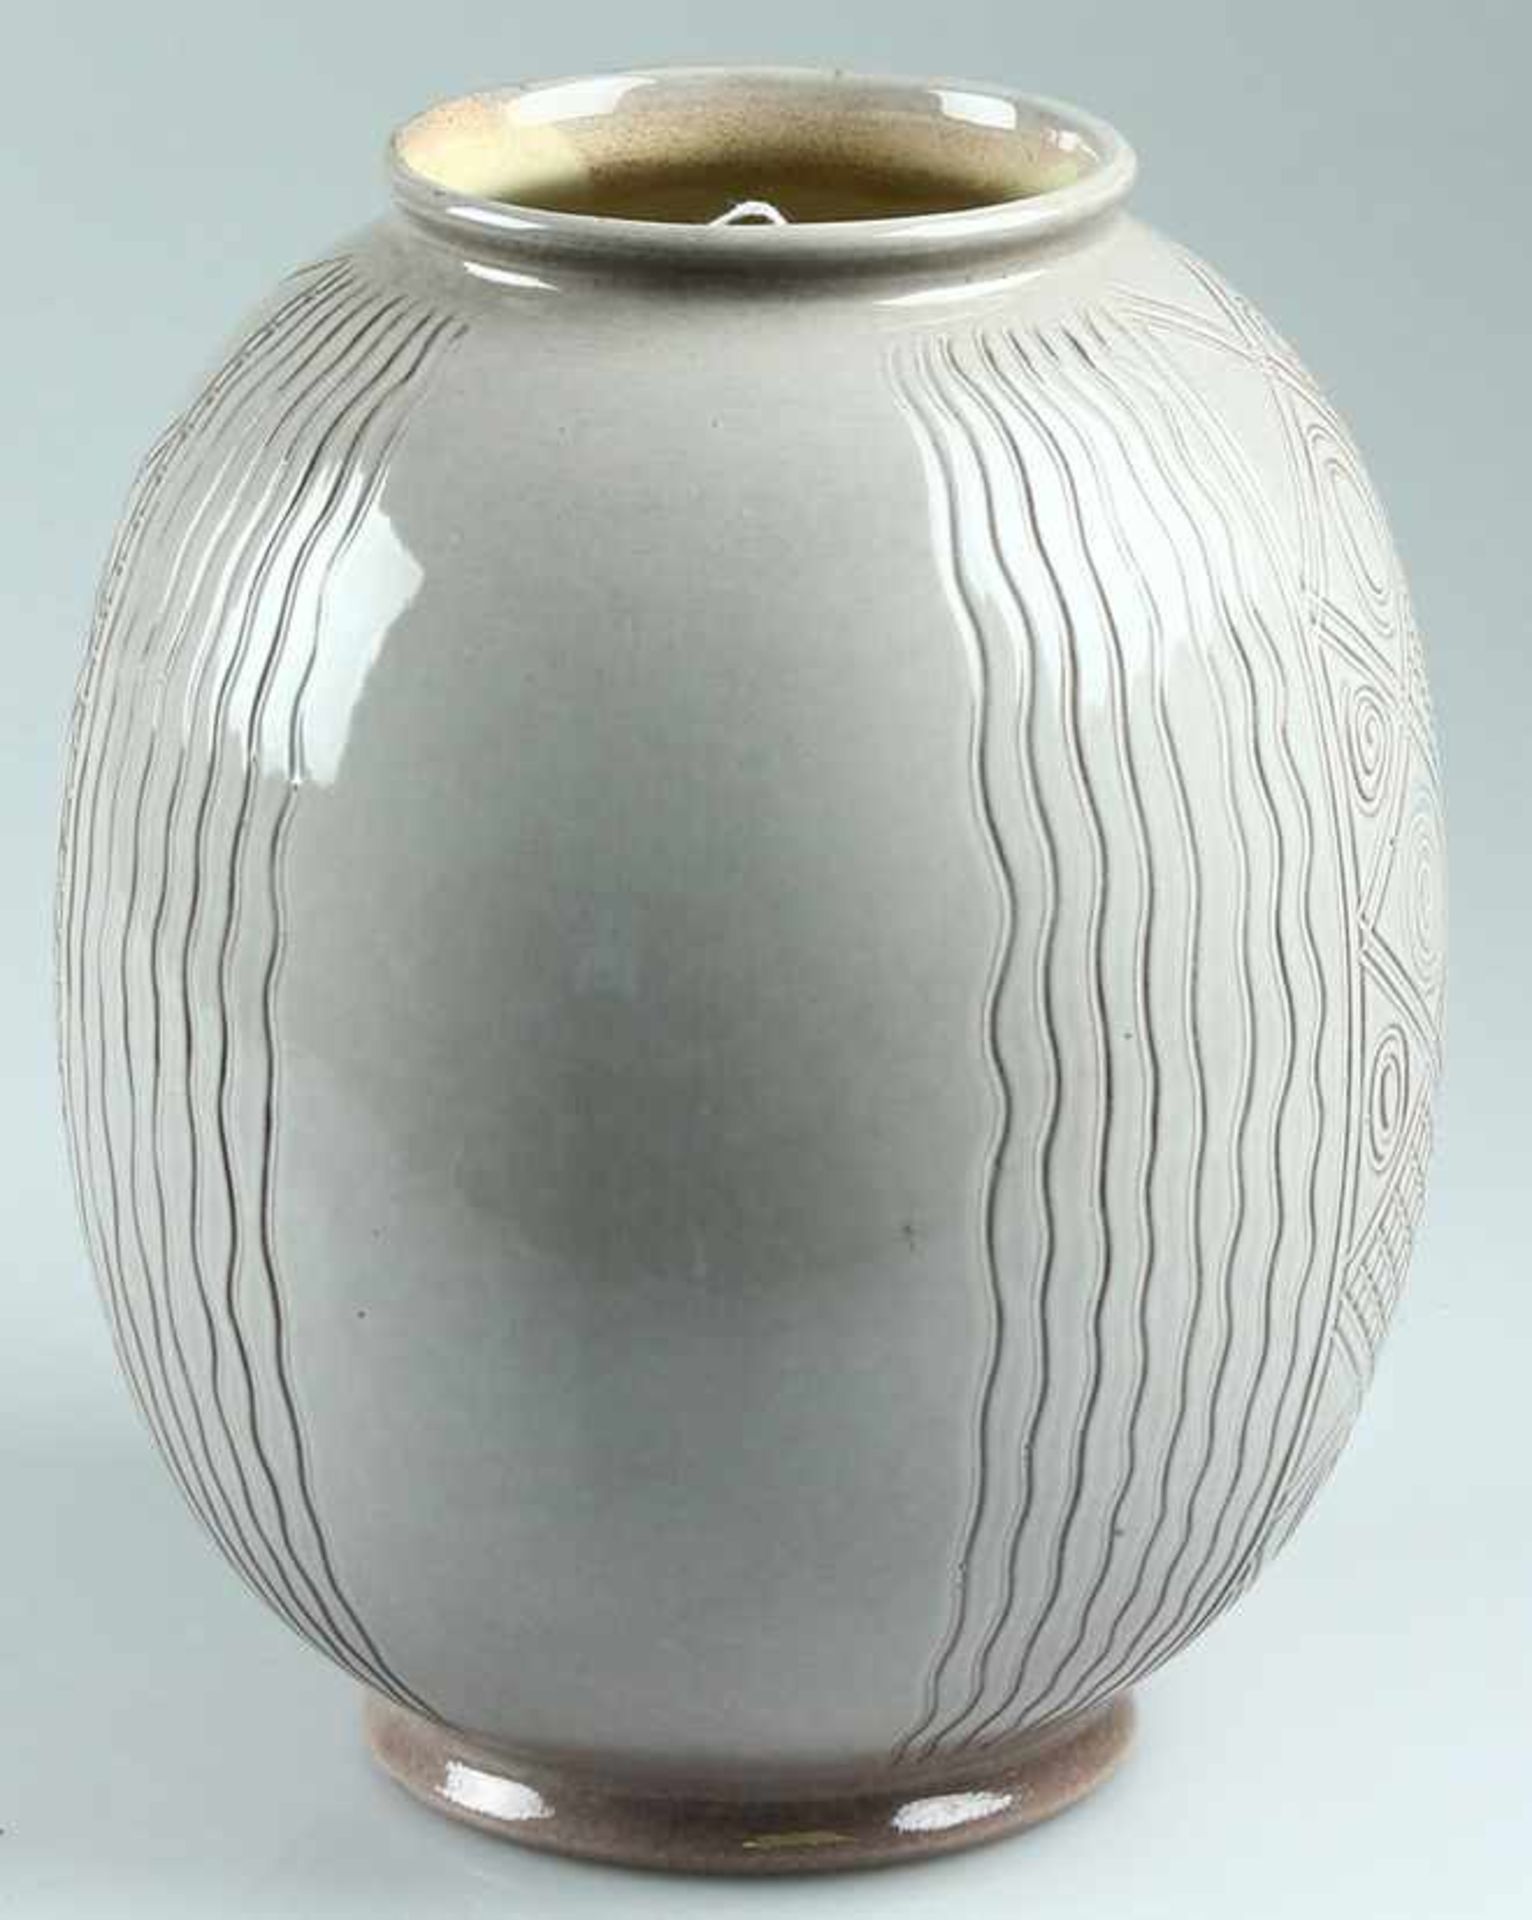 Grijsbruine aardewerk vaas met omgeslagen rand en gegraveerd lijnen- ruiten- en cirkeldecor,